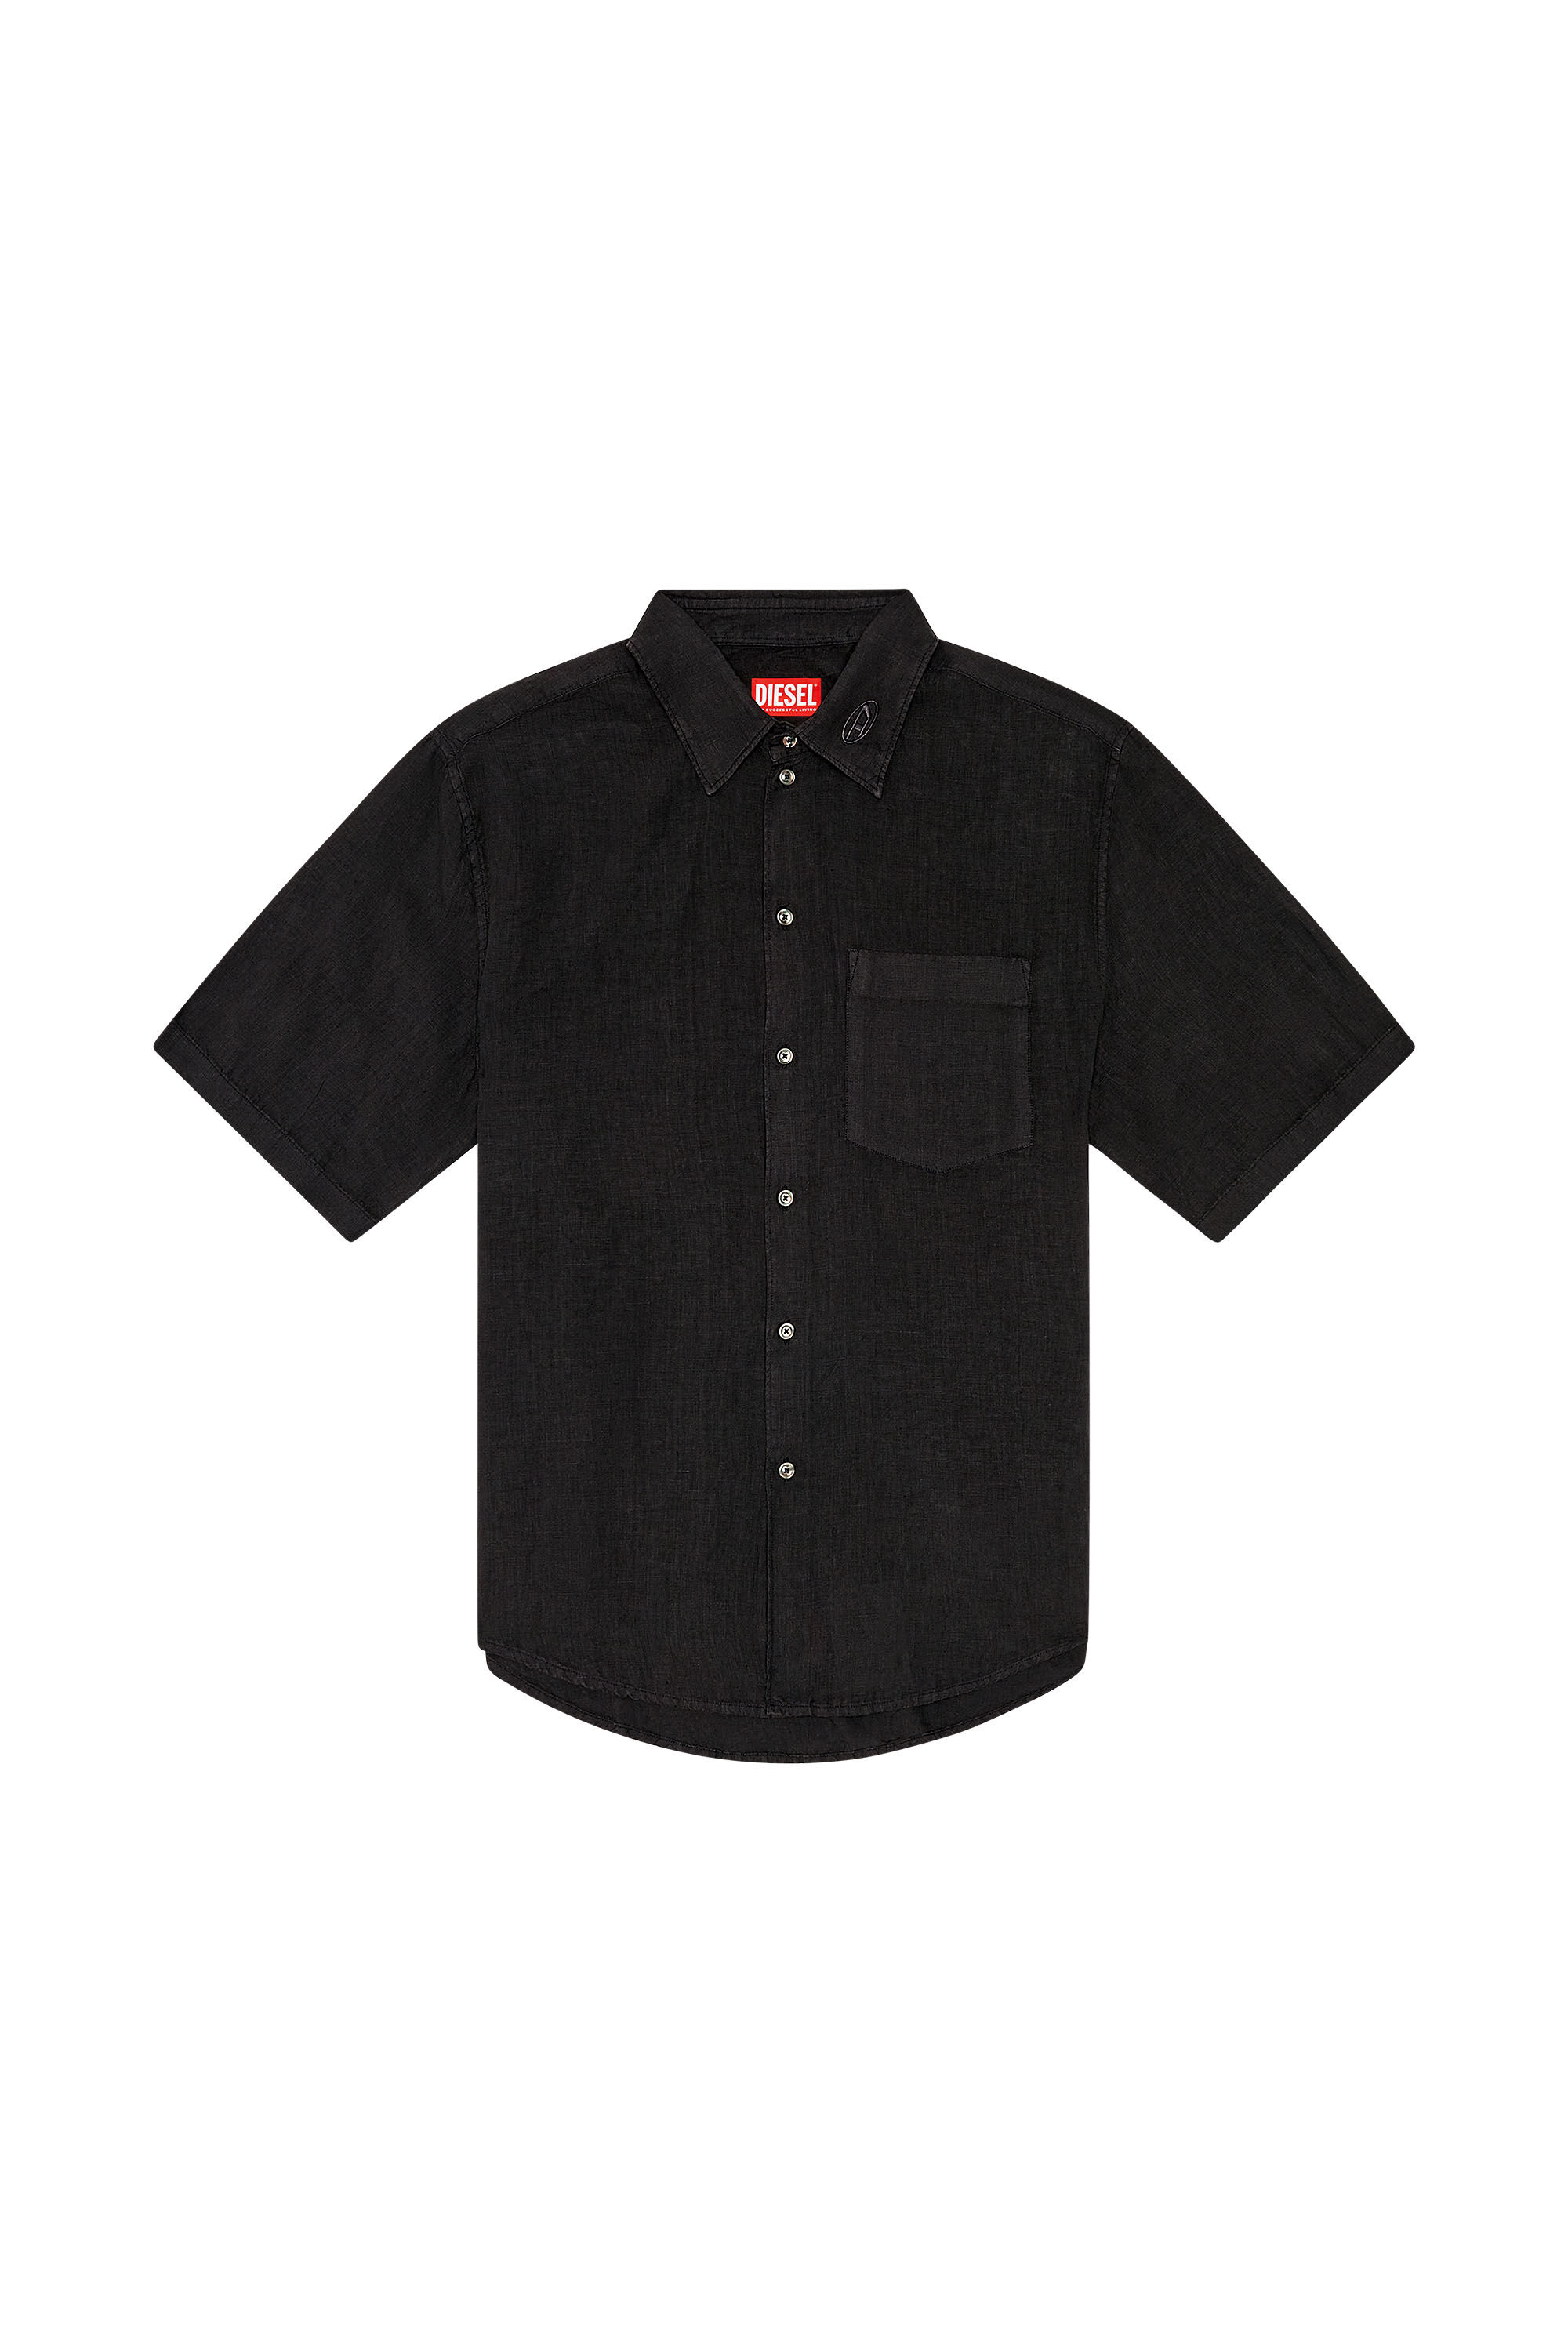 Men's Short-sleeve linen shirt | Black | Diesel